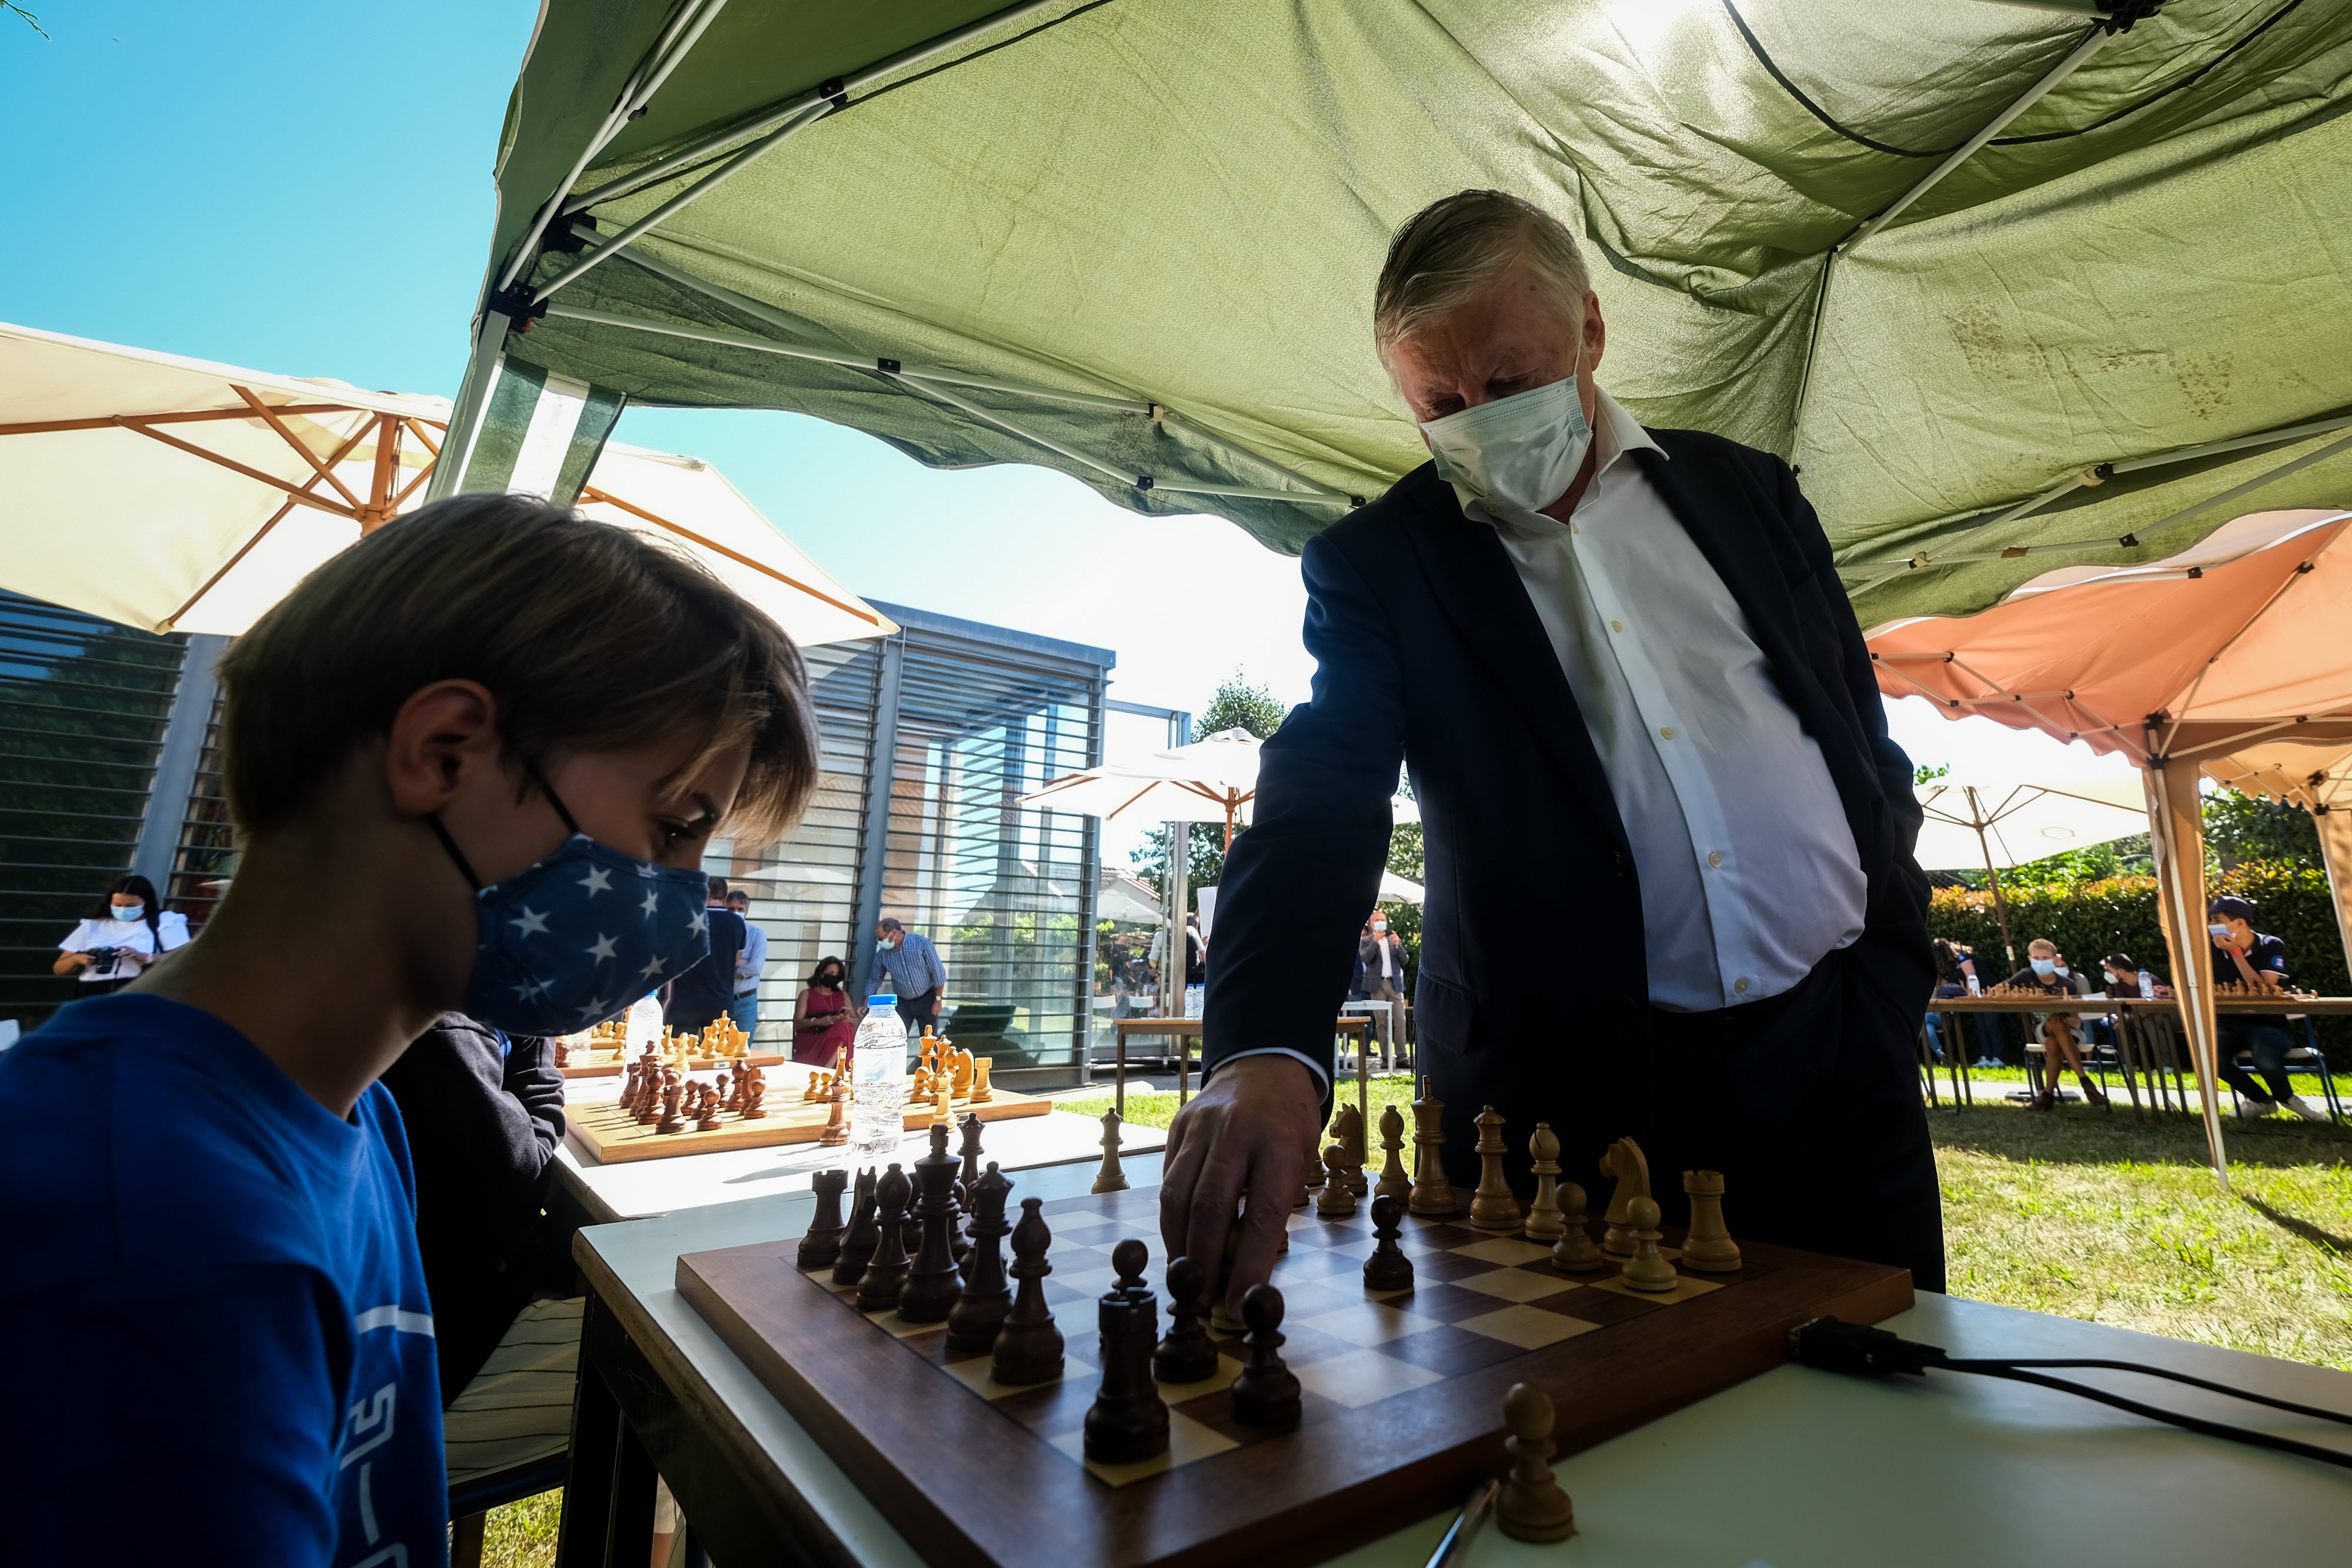 Anatoly Karpov - Aprendendo Xadrez com os Campeões Mundiais 